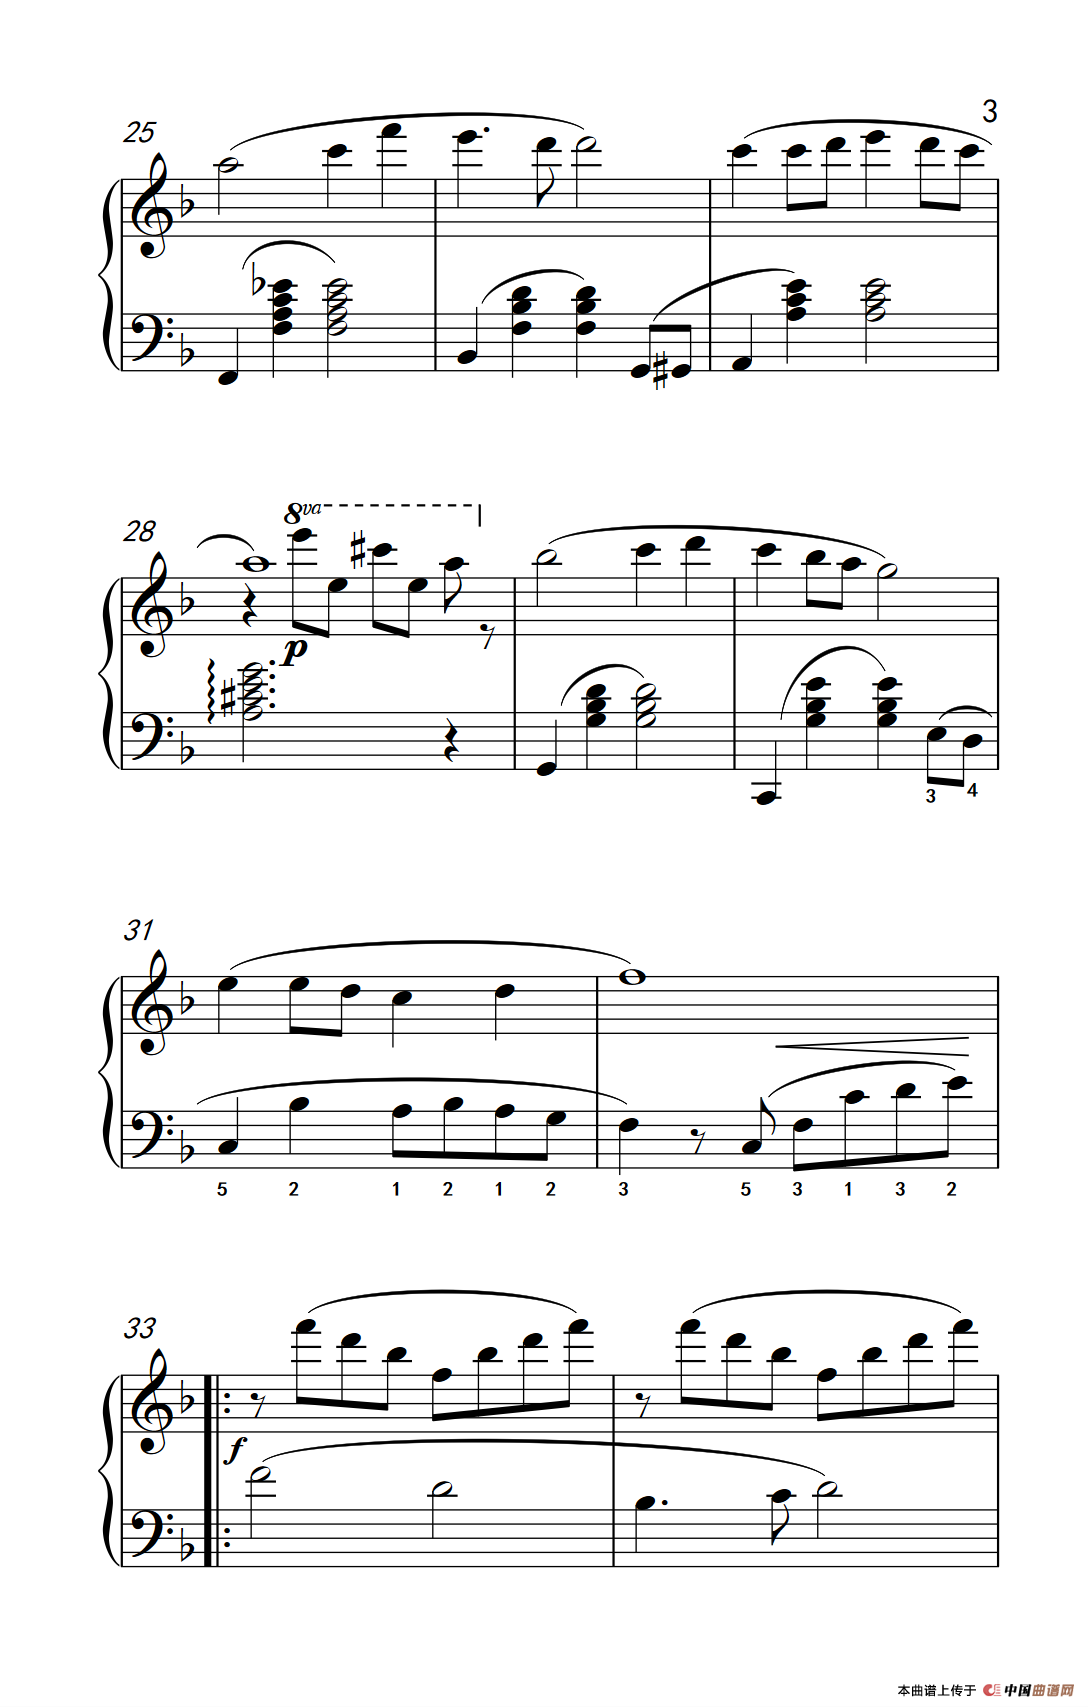 玫瑰经（约翰·汤普森 成人钢琴教程 第三册）(1)_245_33_3.png